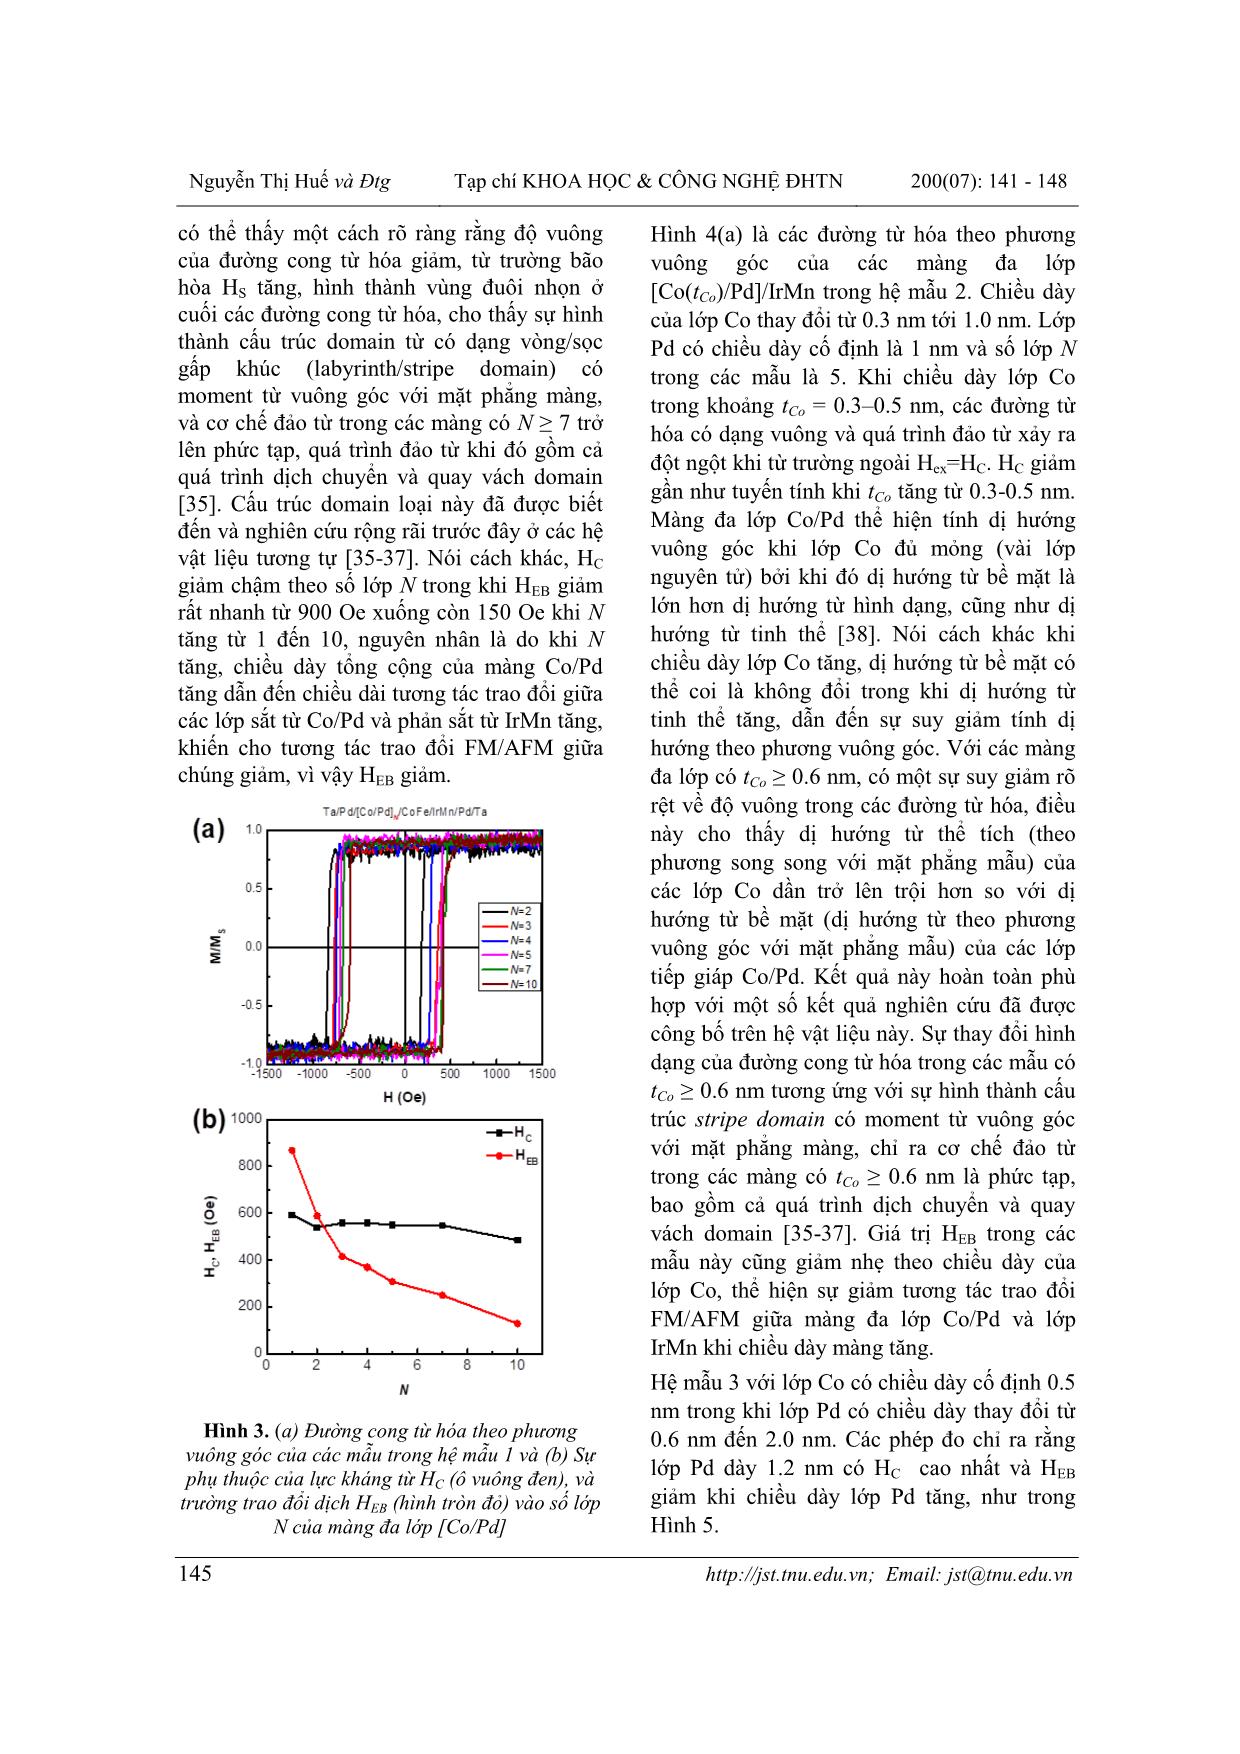 Điều biến trường trao đổi dịch và lực kháng từ theo phương vuông góc trong màng đa lớp [co/pd]/irmn trang 5